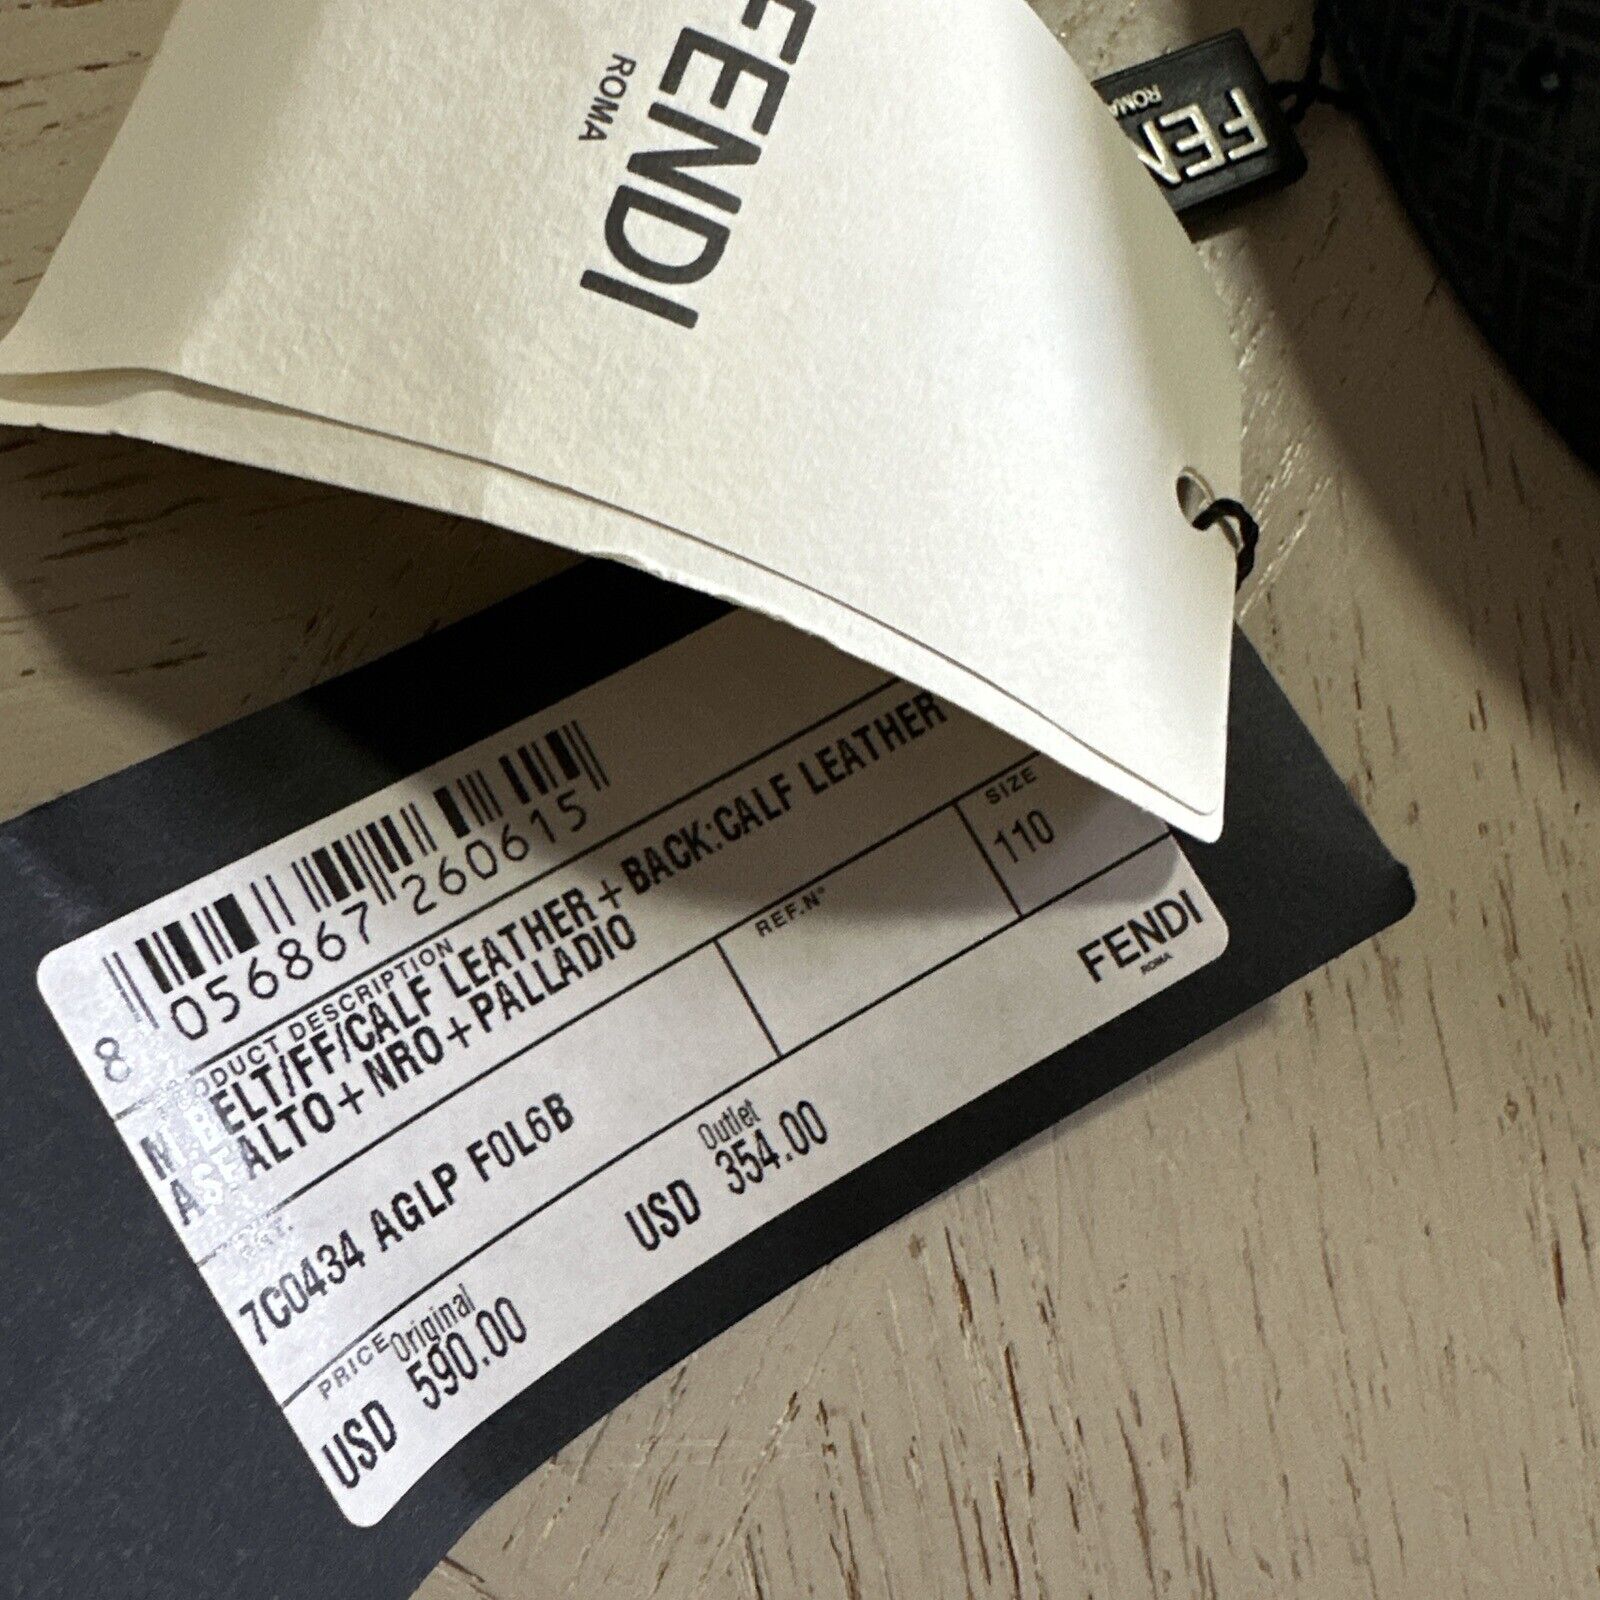 Новый мужской кожаный ремень Fendi FF Logo за 590 долларов, серый/черный 110/44